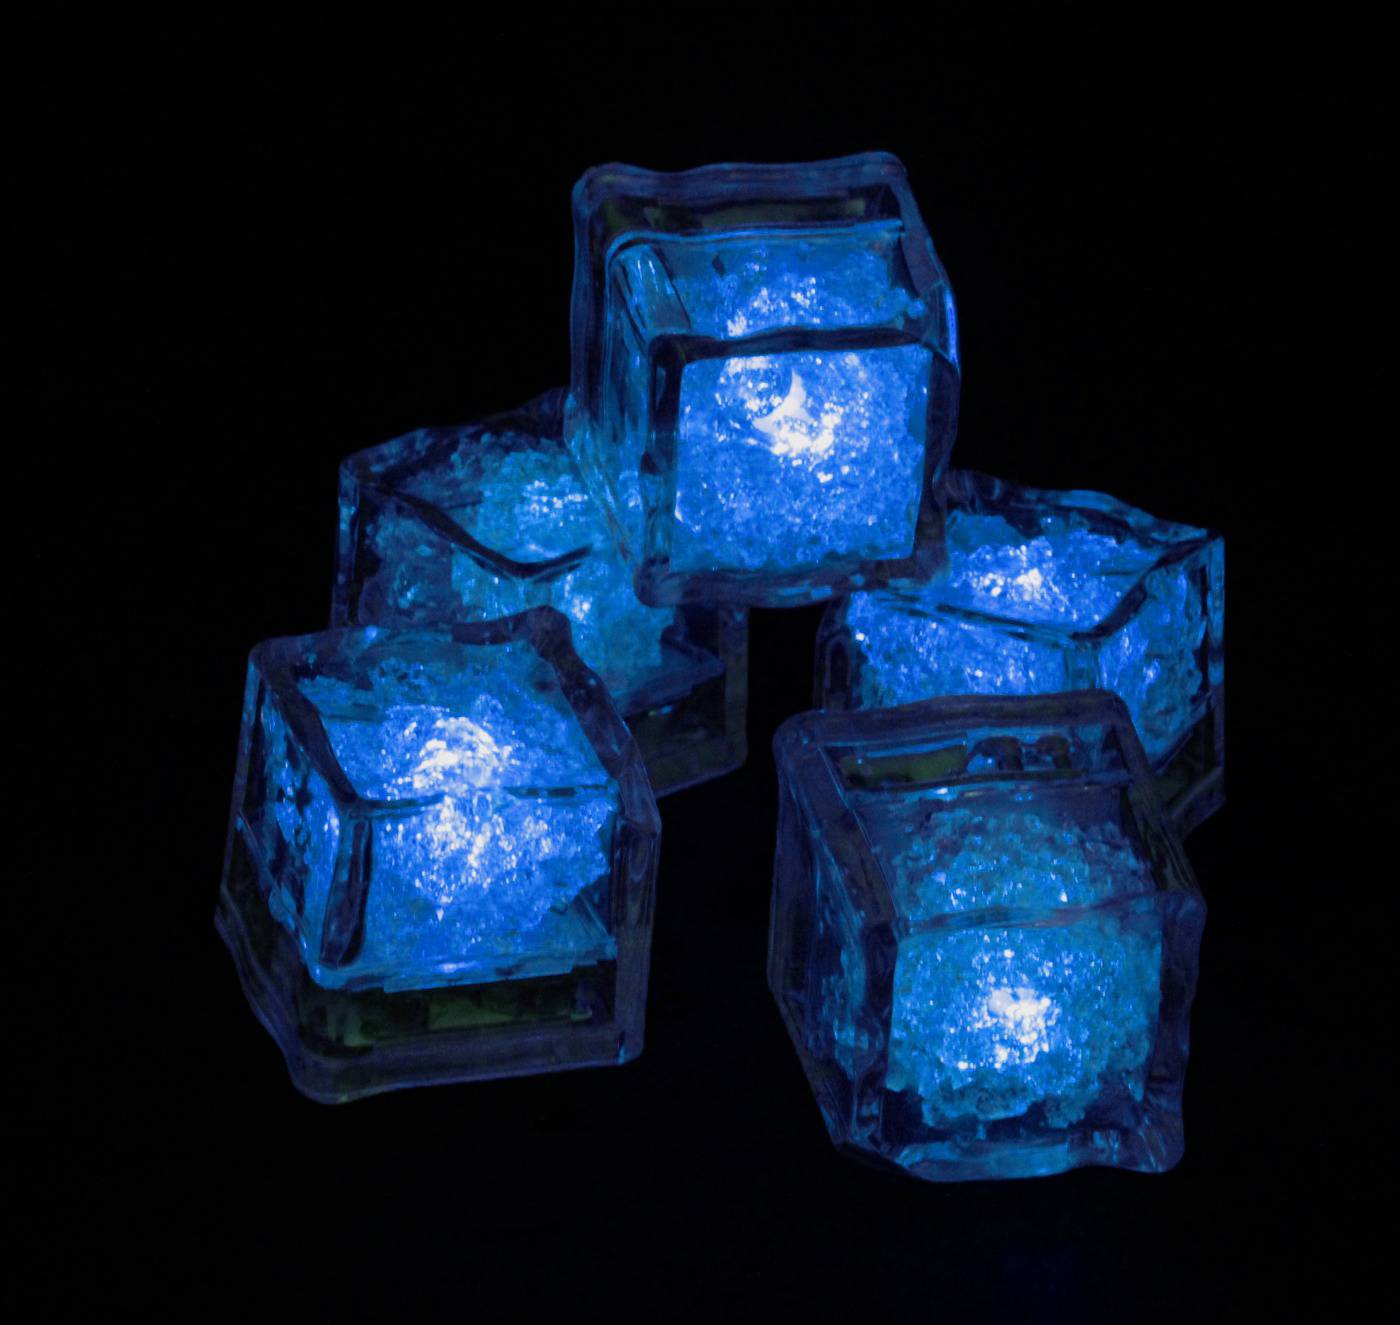 Blind vezel Lagere school LED ijsblokjes blauw kopen? | De Horeca Bazaar